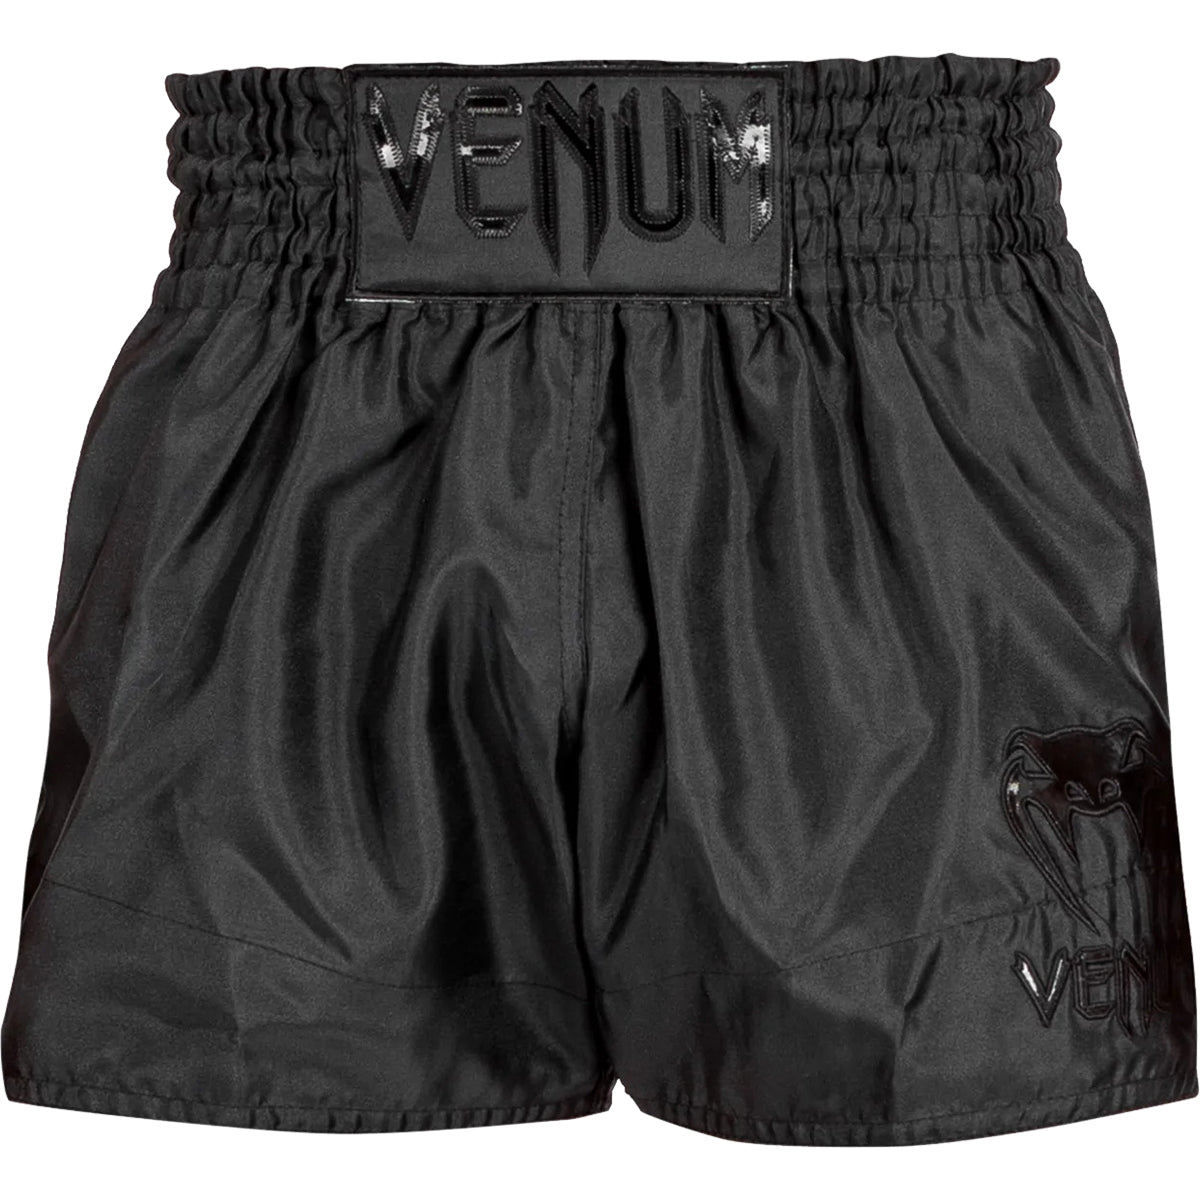 Venum Classic Muay Thai Shorts - Black/Black Venum